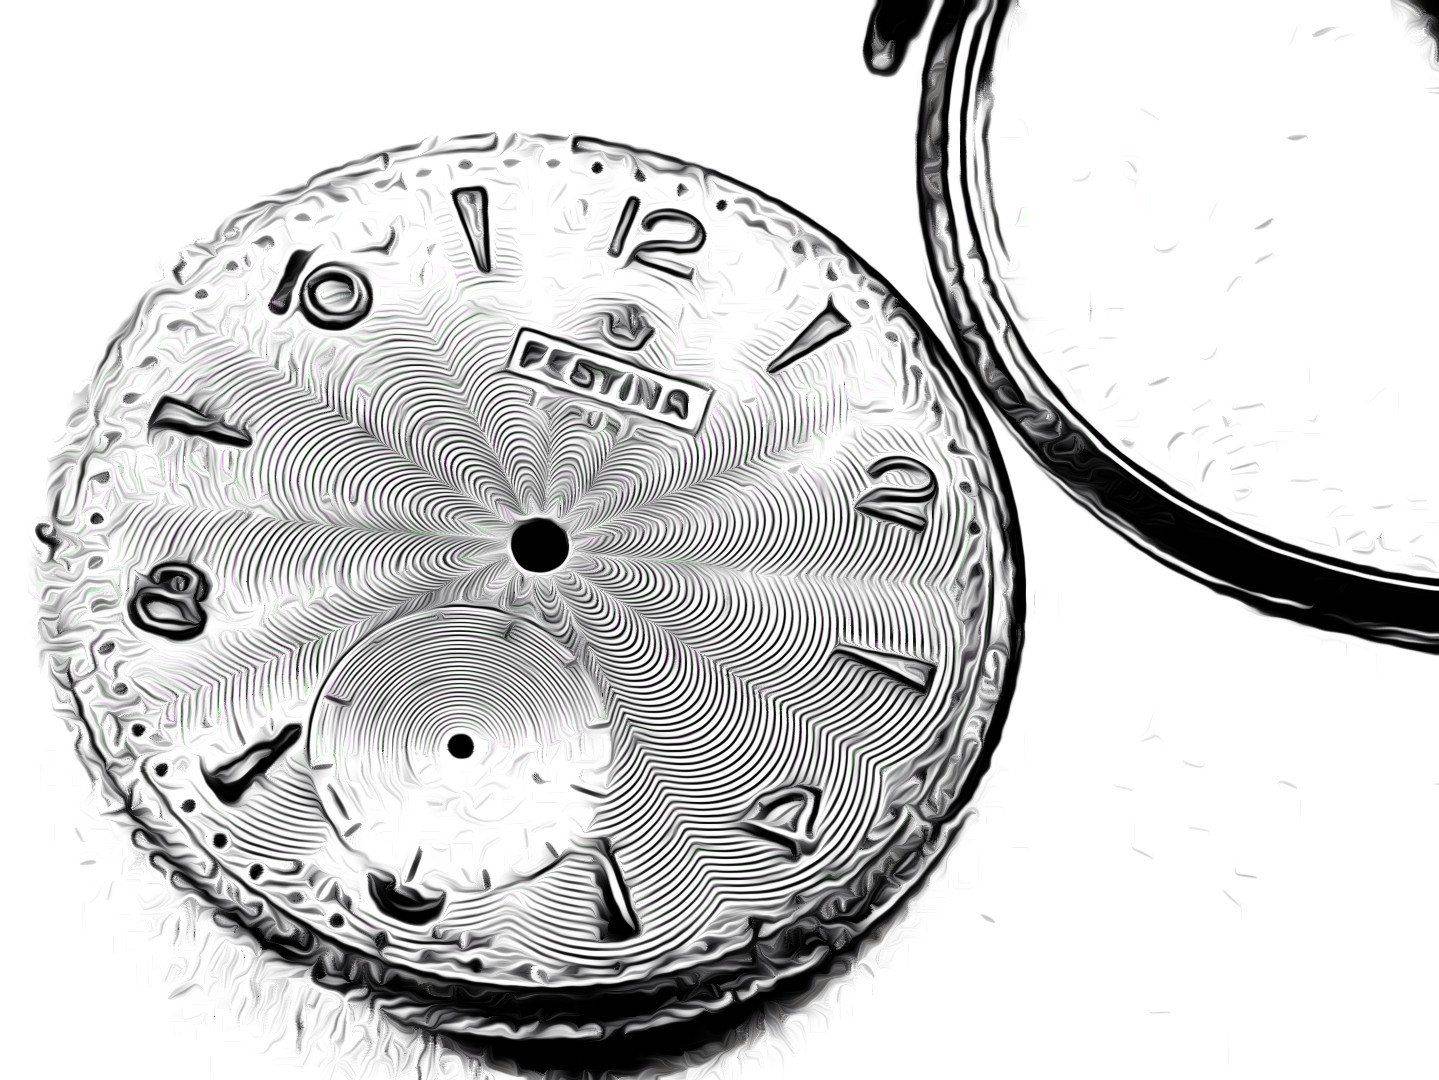 Festina ETA 853_ la relojeria vintage (76).jpg